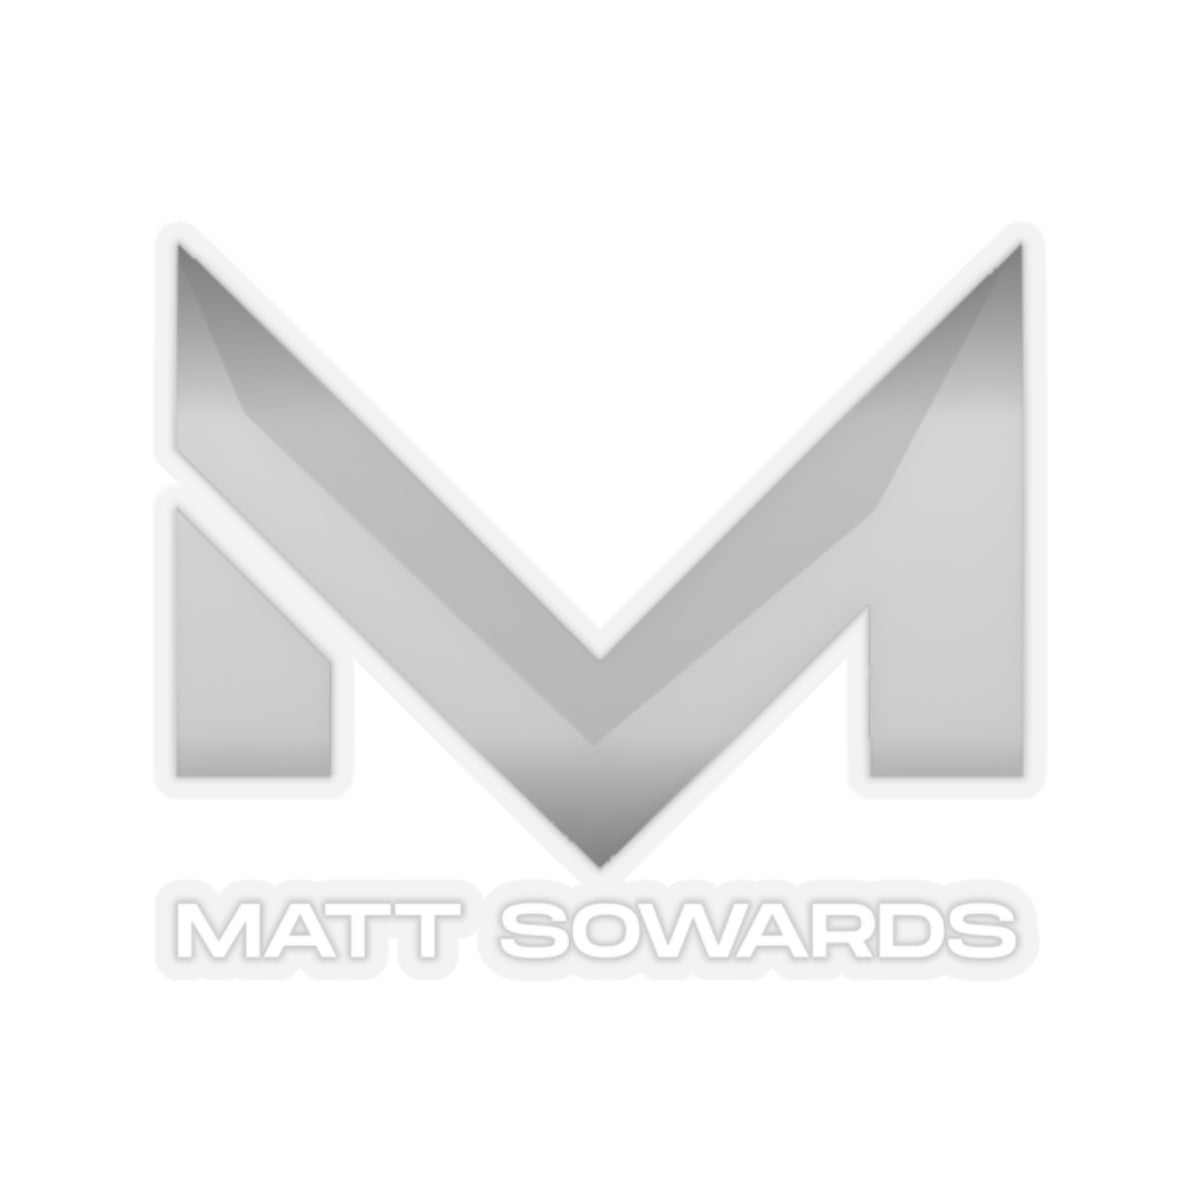 Matt Sowards Kiss-Cut Stickers - Matt Sowards Merch